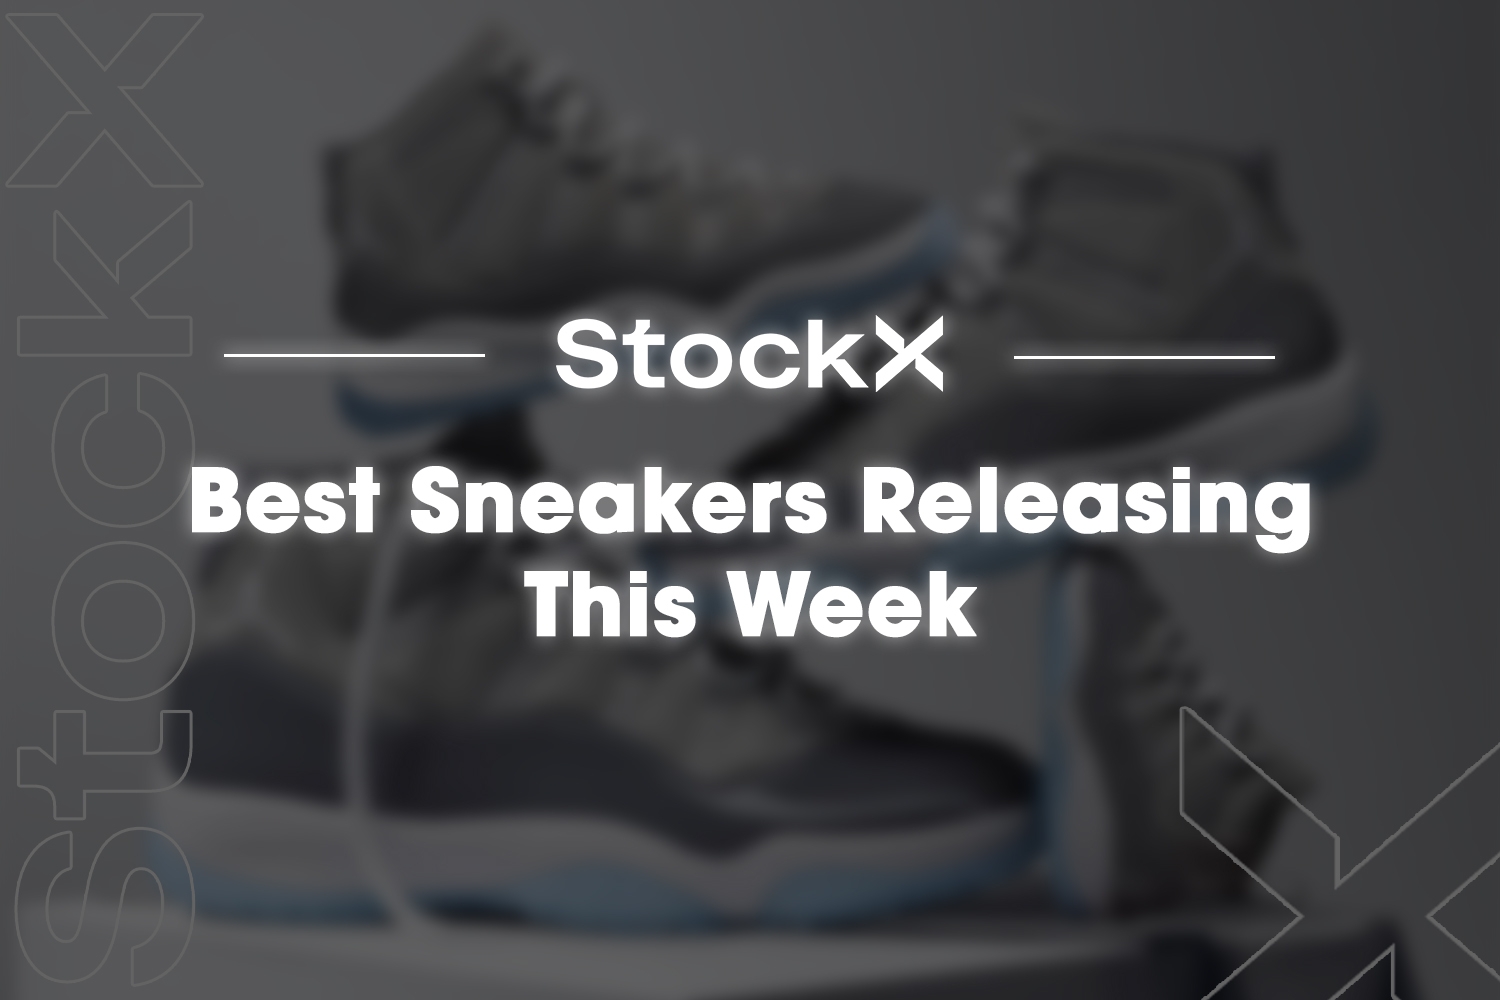 De populairste sneakers op StockX in week 51